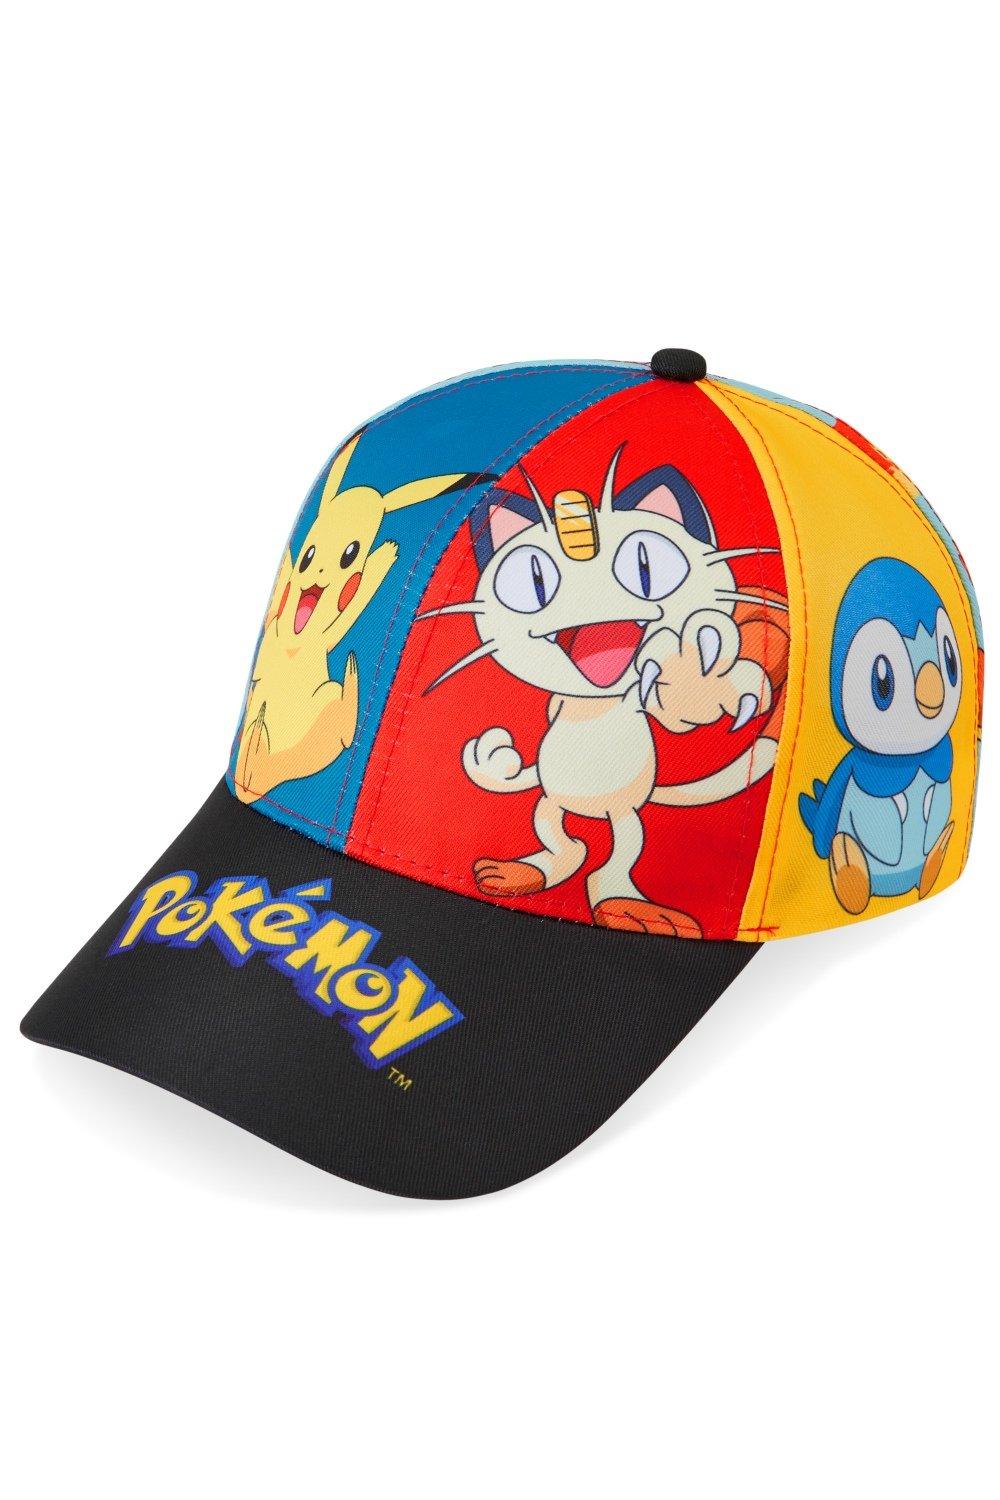 Hats | Panel Print Cap | Pokemon